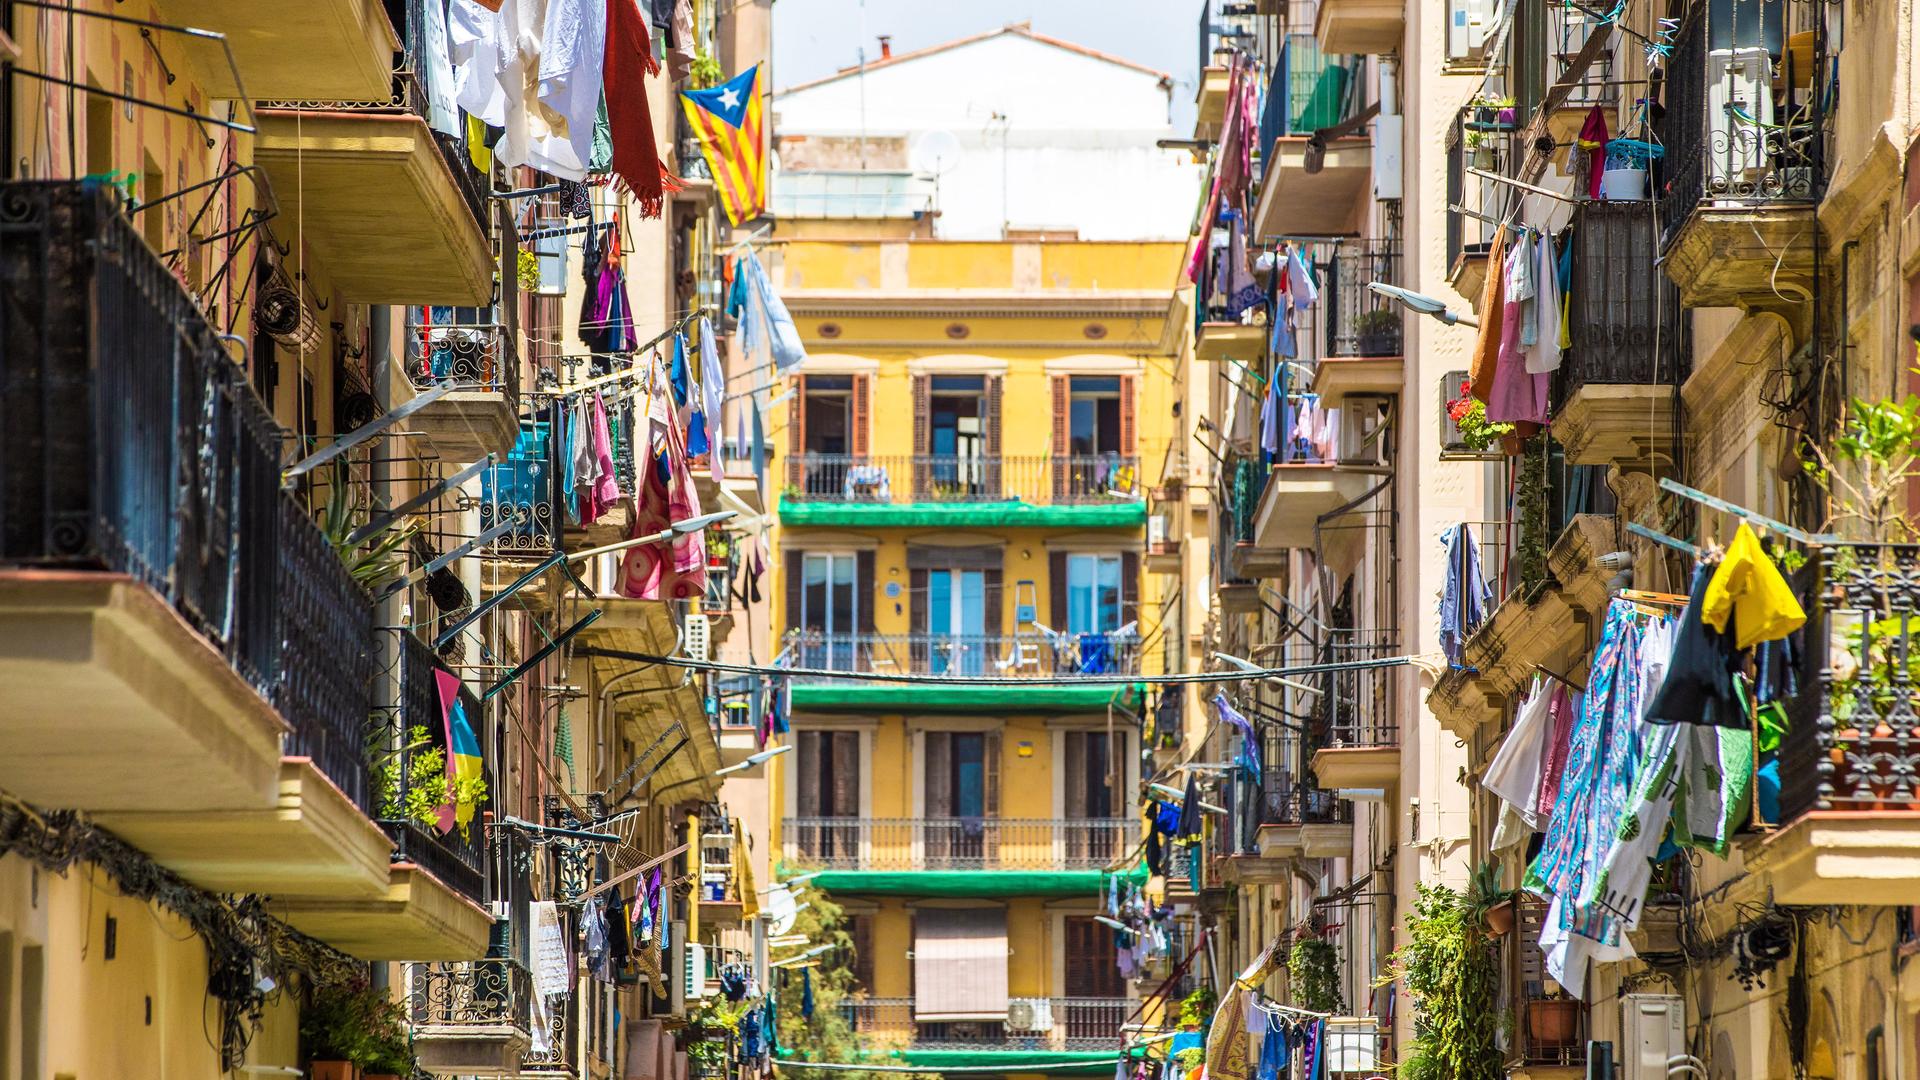 Blick in eine Straße mit mehrstöckigen Wohnhäusern. Auf den Balkonen hängt viel Wäsche zum trocknen.